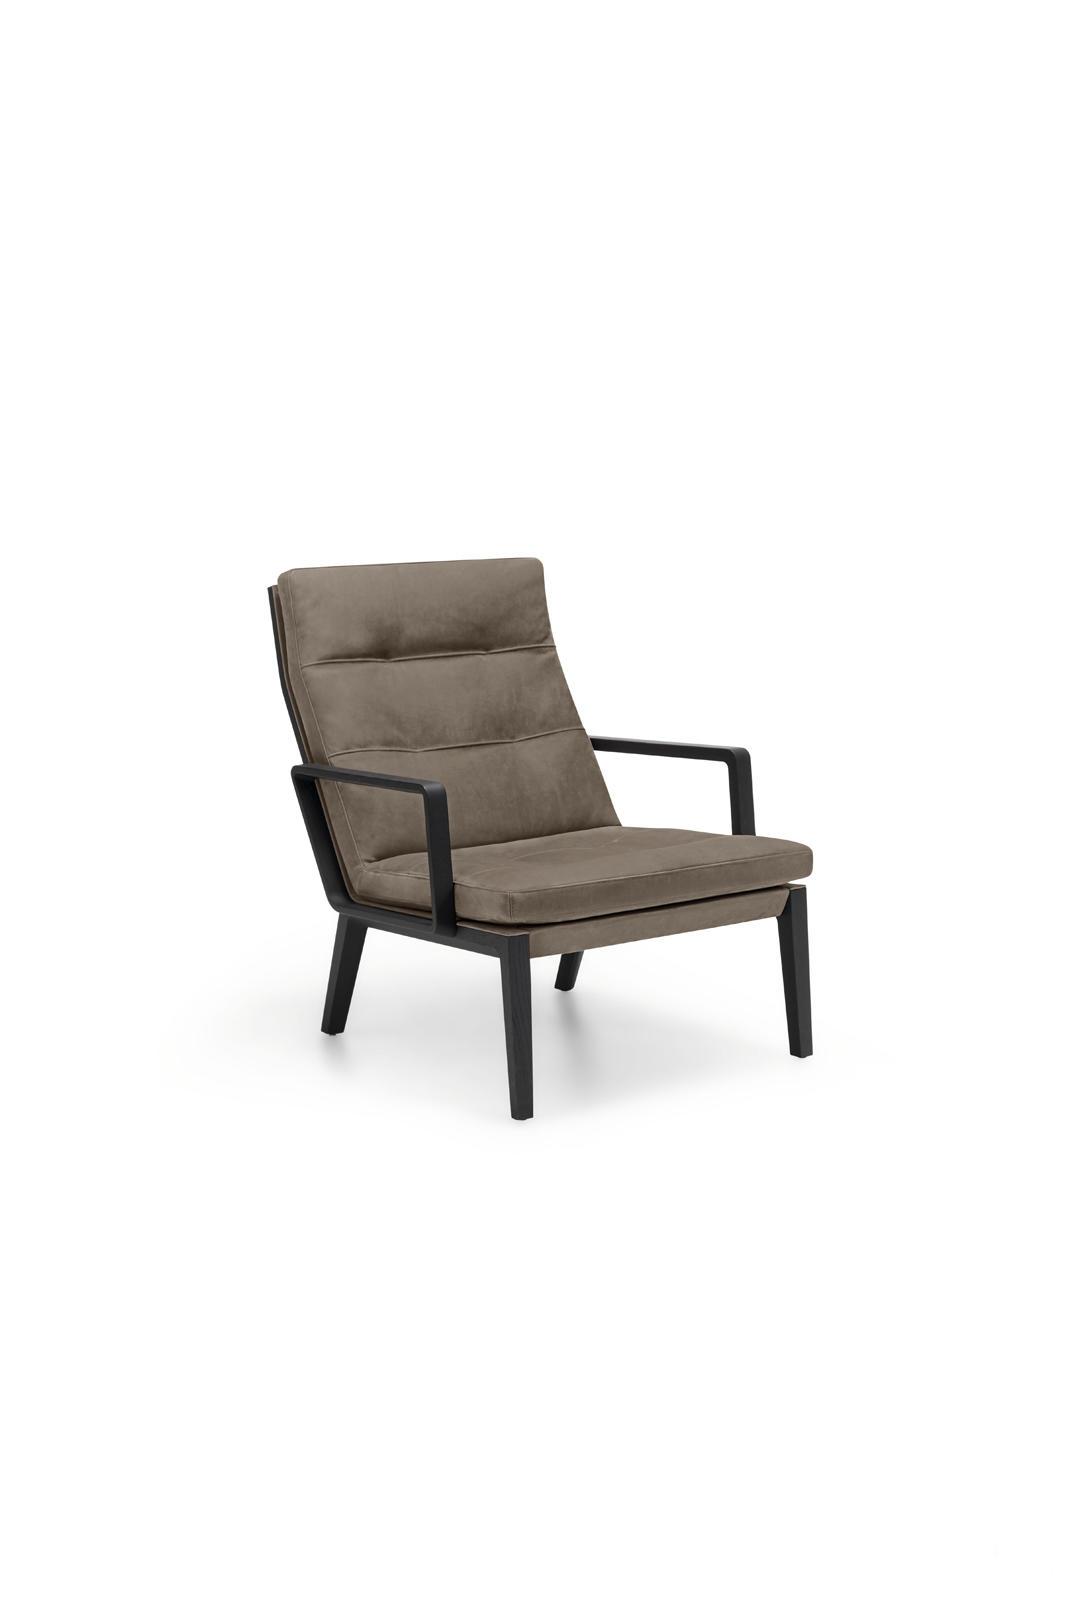 Кресло Andoo Lounge Chair от Walter Knoll — Фотография 1